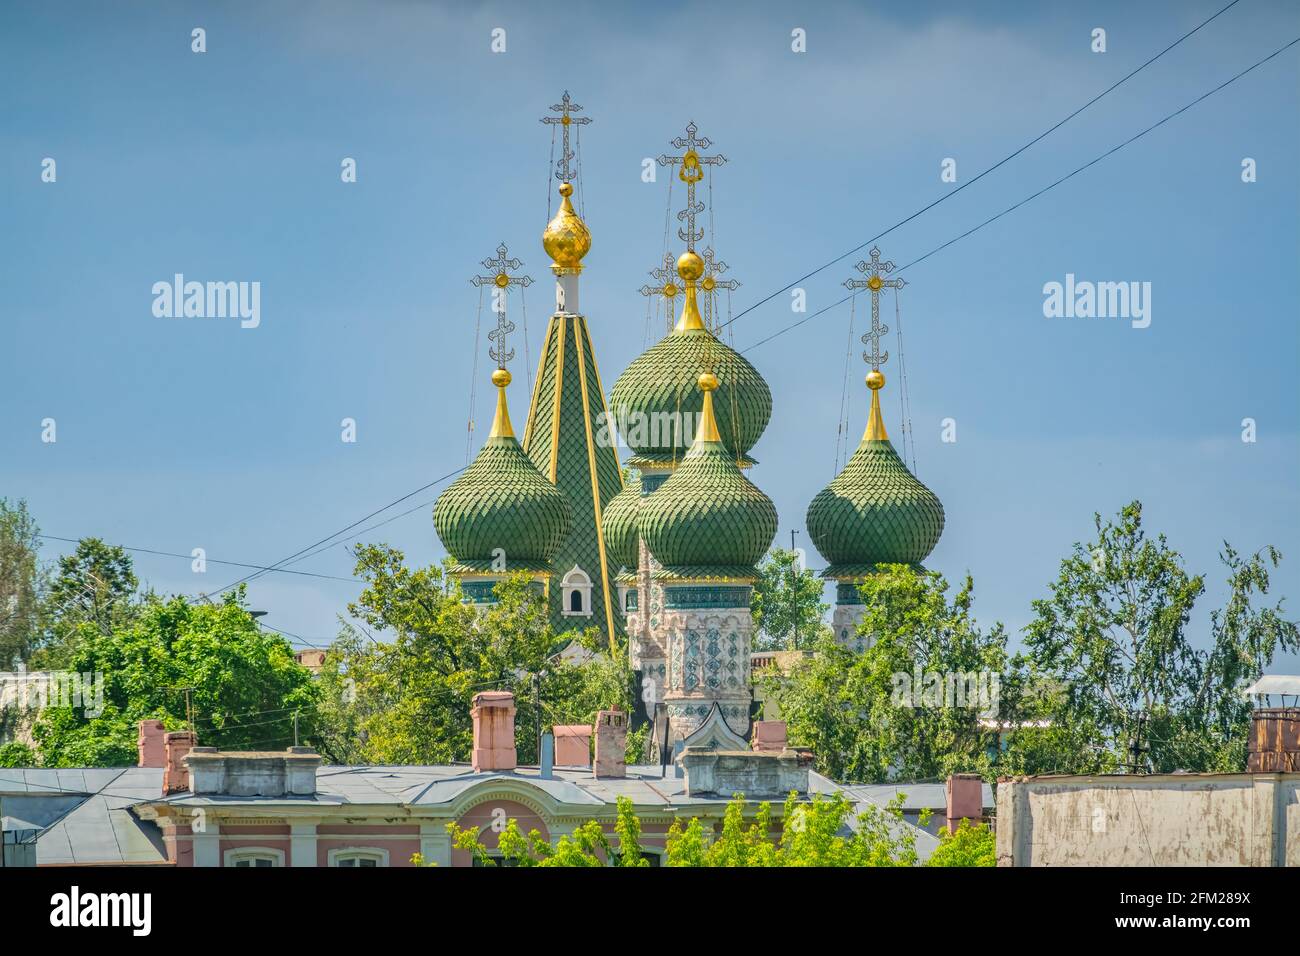 L'église de l'Assomption avec des tours à dôme d'oignon vert à Nijni Novgorod, Russie Banque D'Images